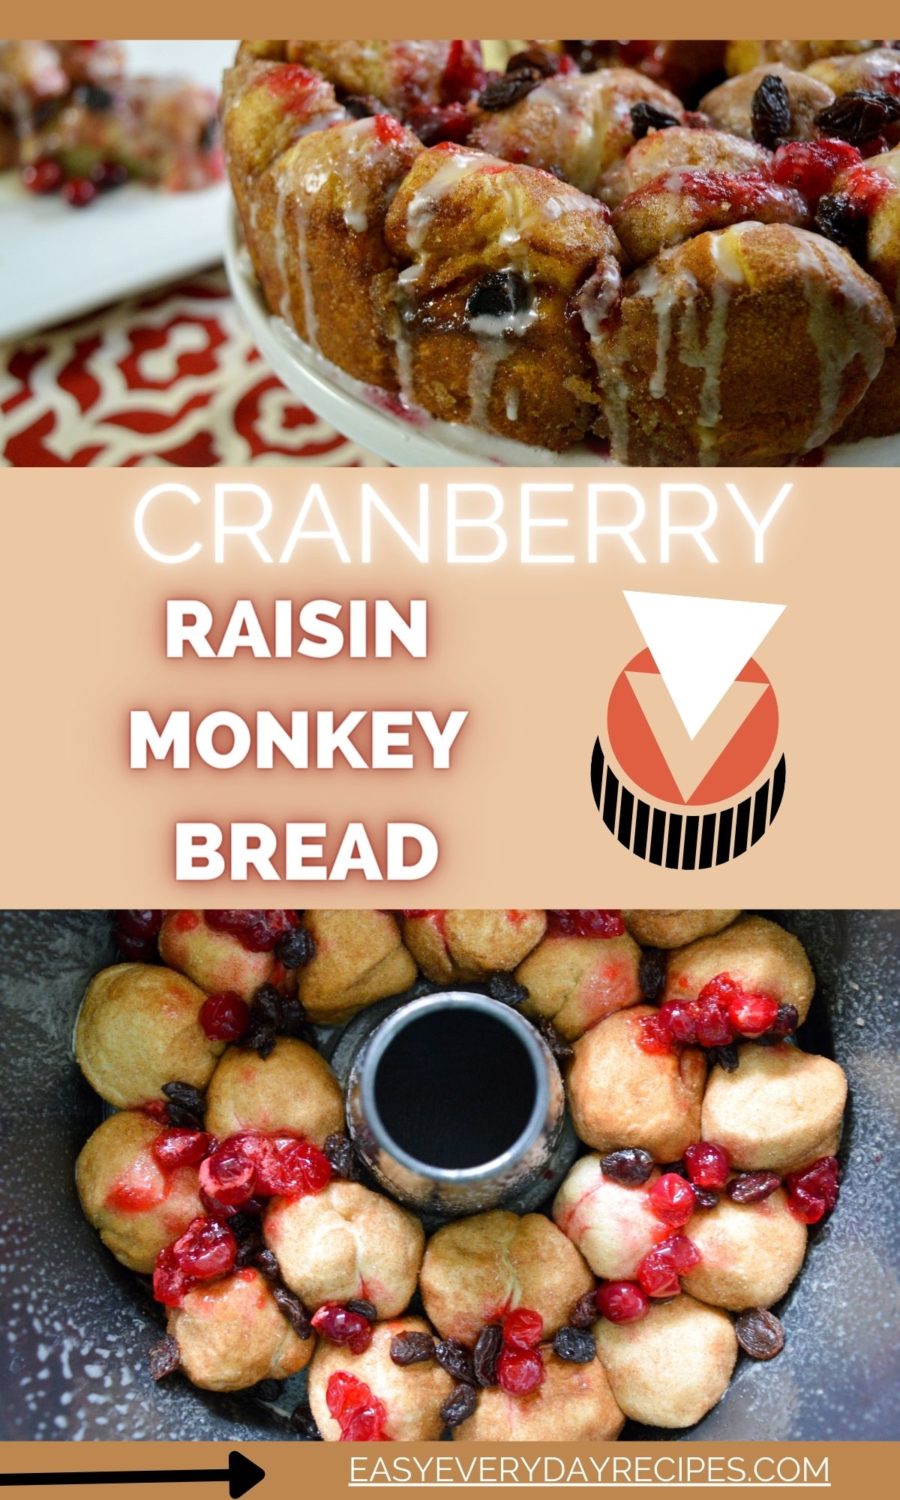 Cranberry raisin monkey bread.